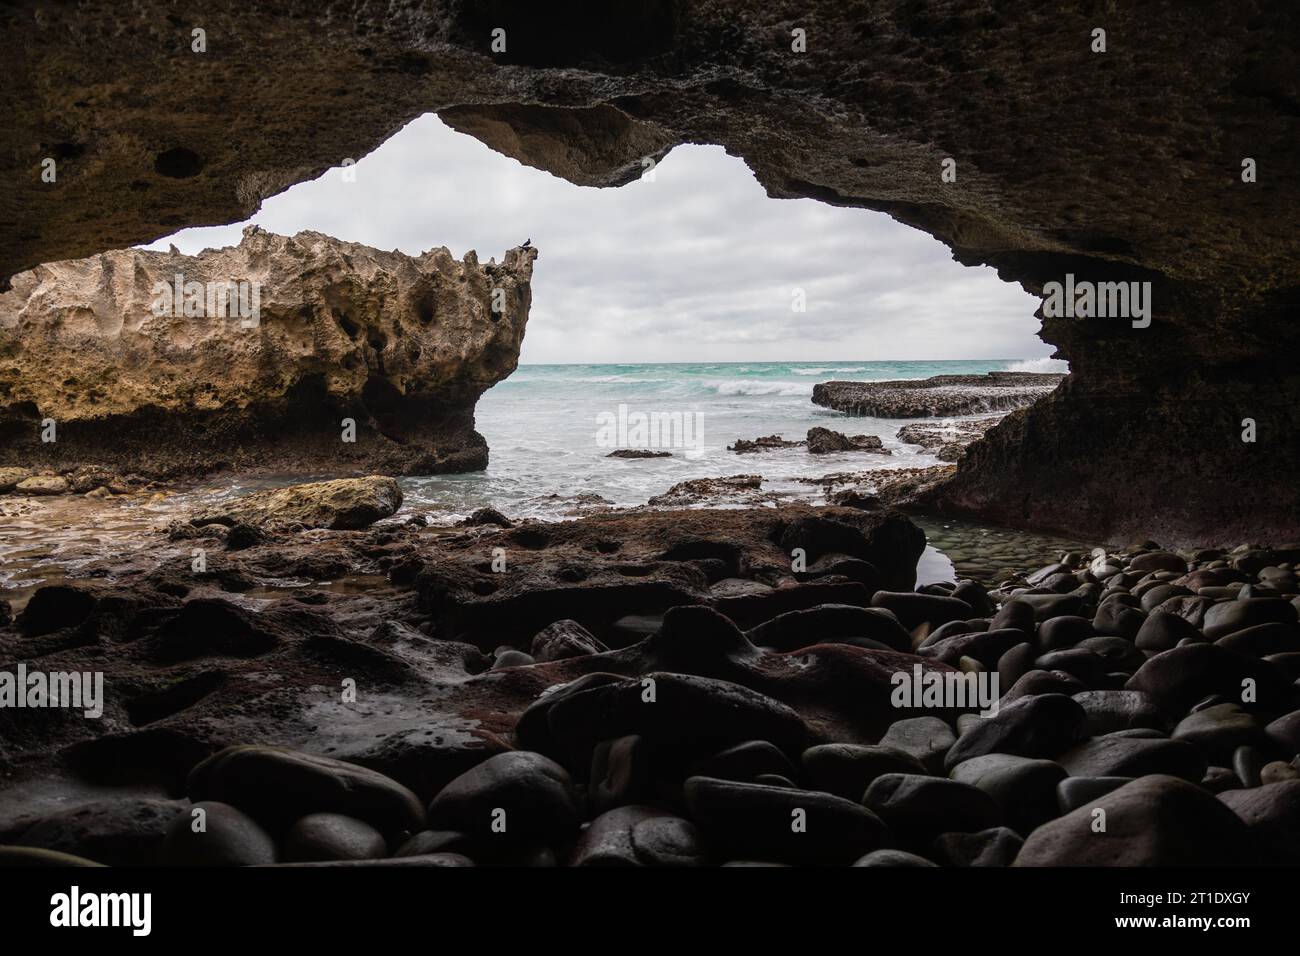 Wenn Sie von der Höhle aus blicken, offenbart sich ein felsiger Felsvorsprung, der vom Meer umgeben ist, während das Innere der Höhle mit einer Reihe von Felsen gefüllt ist Stockfoto